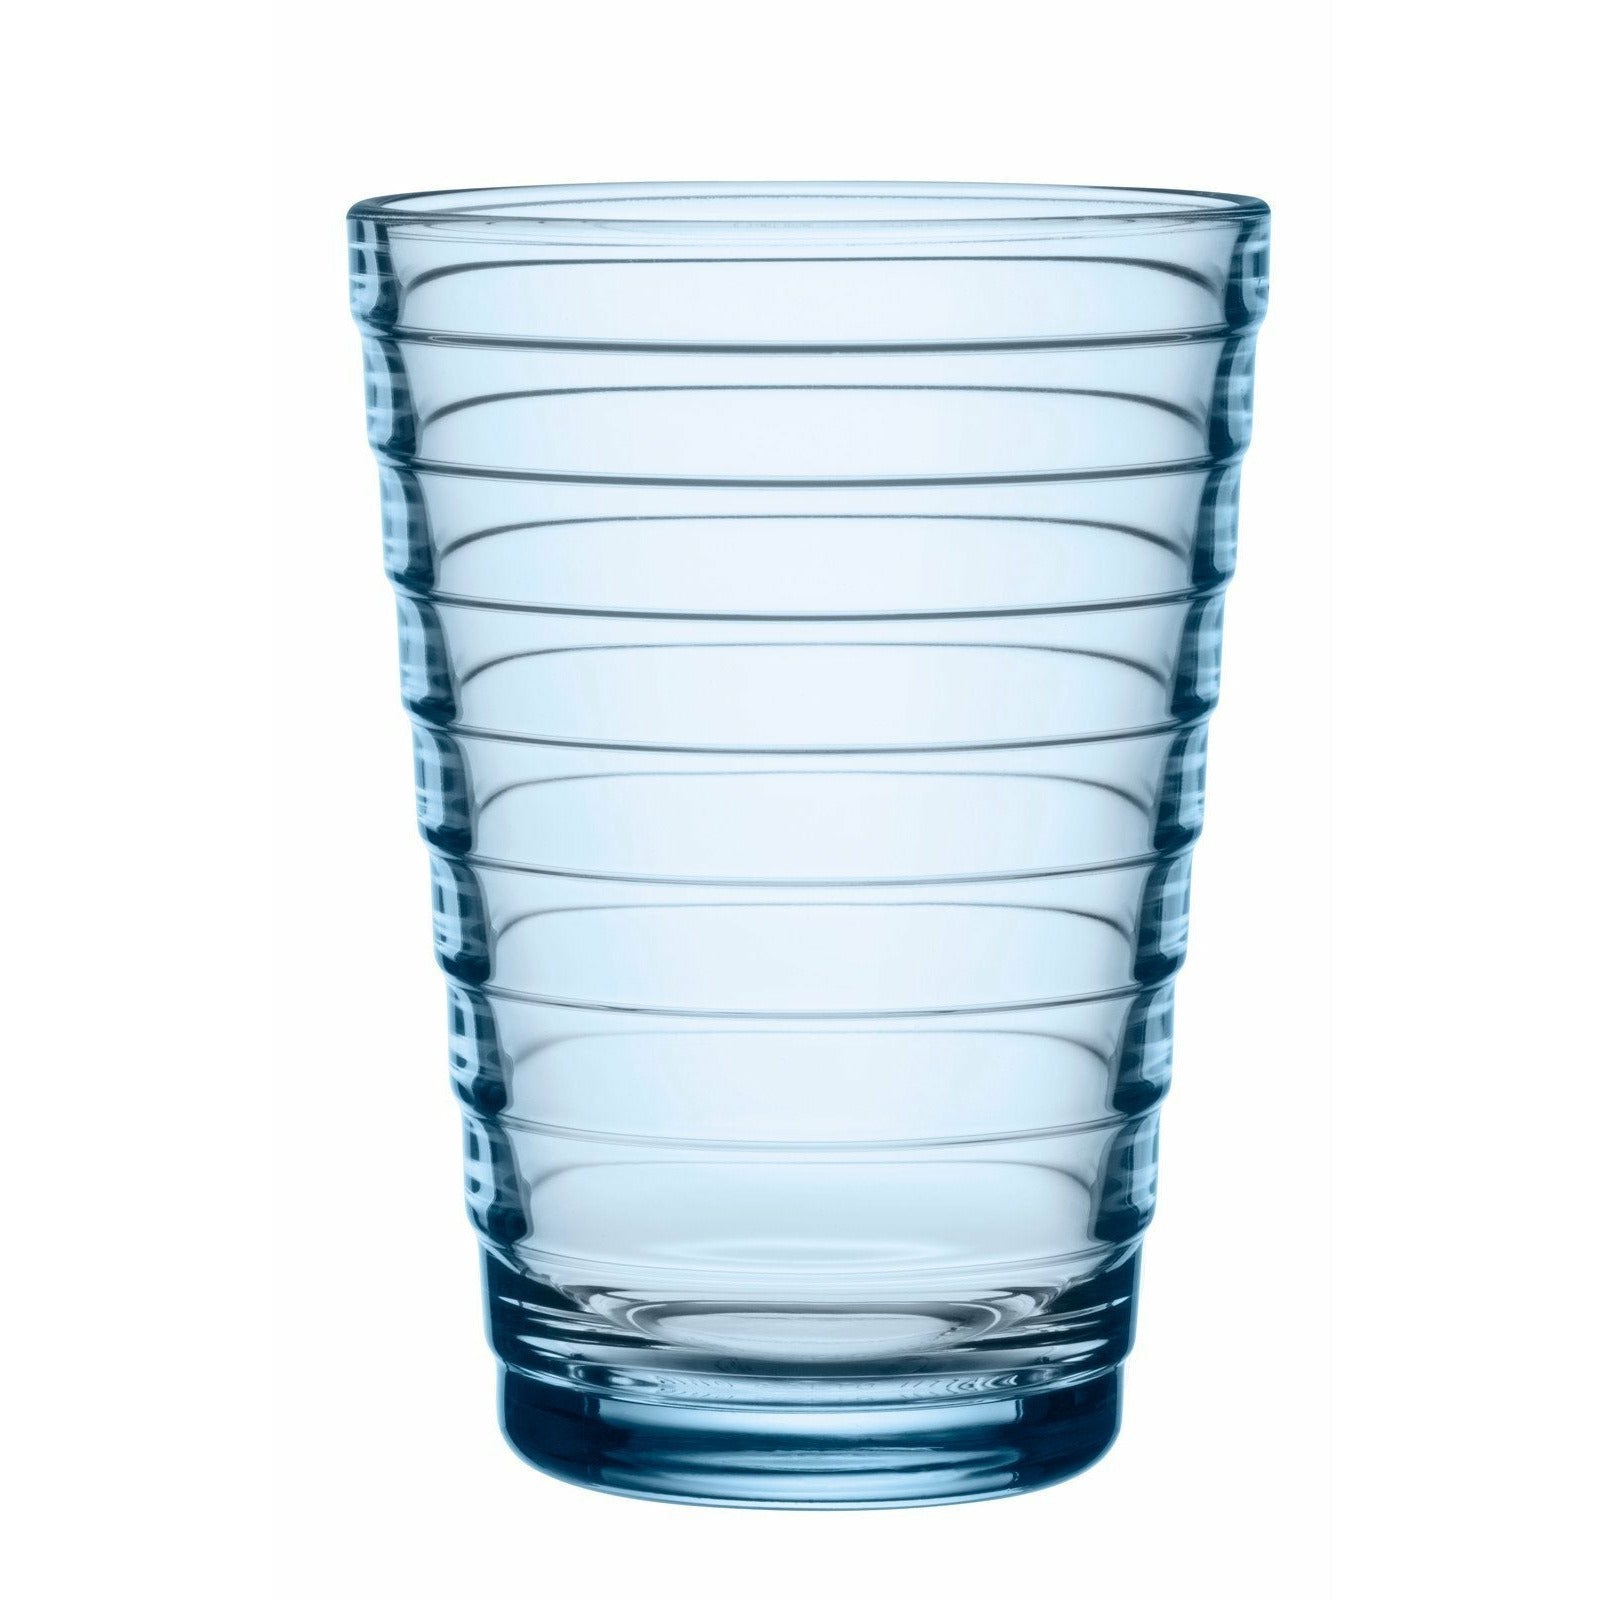 Iittala Aino Aalto Trinkglas Aqua 33cl, 2Stk.